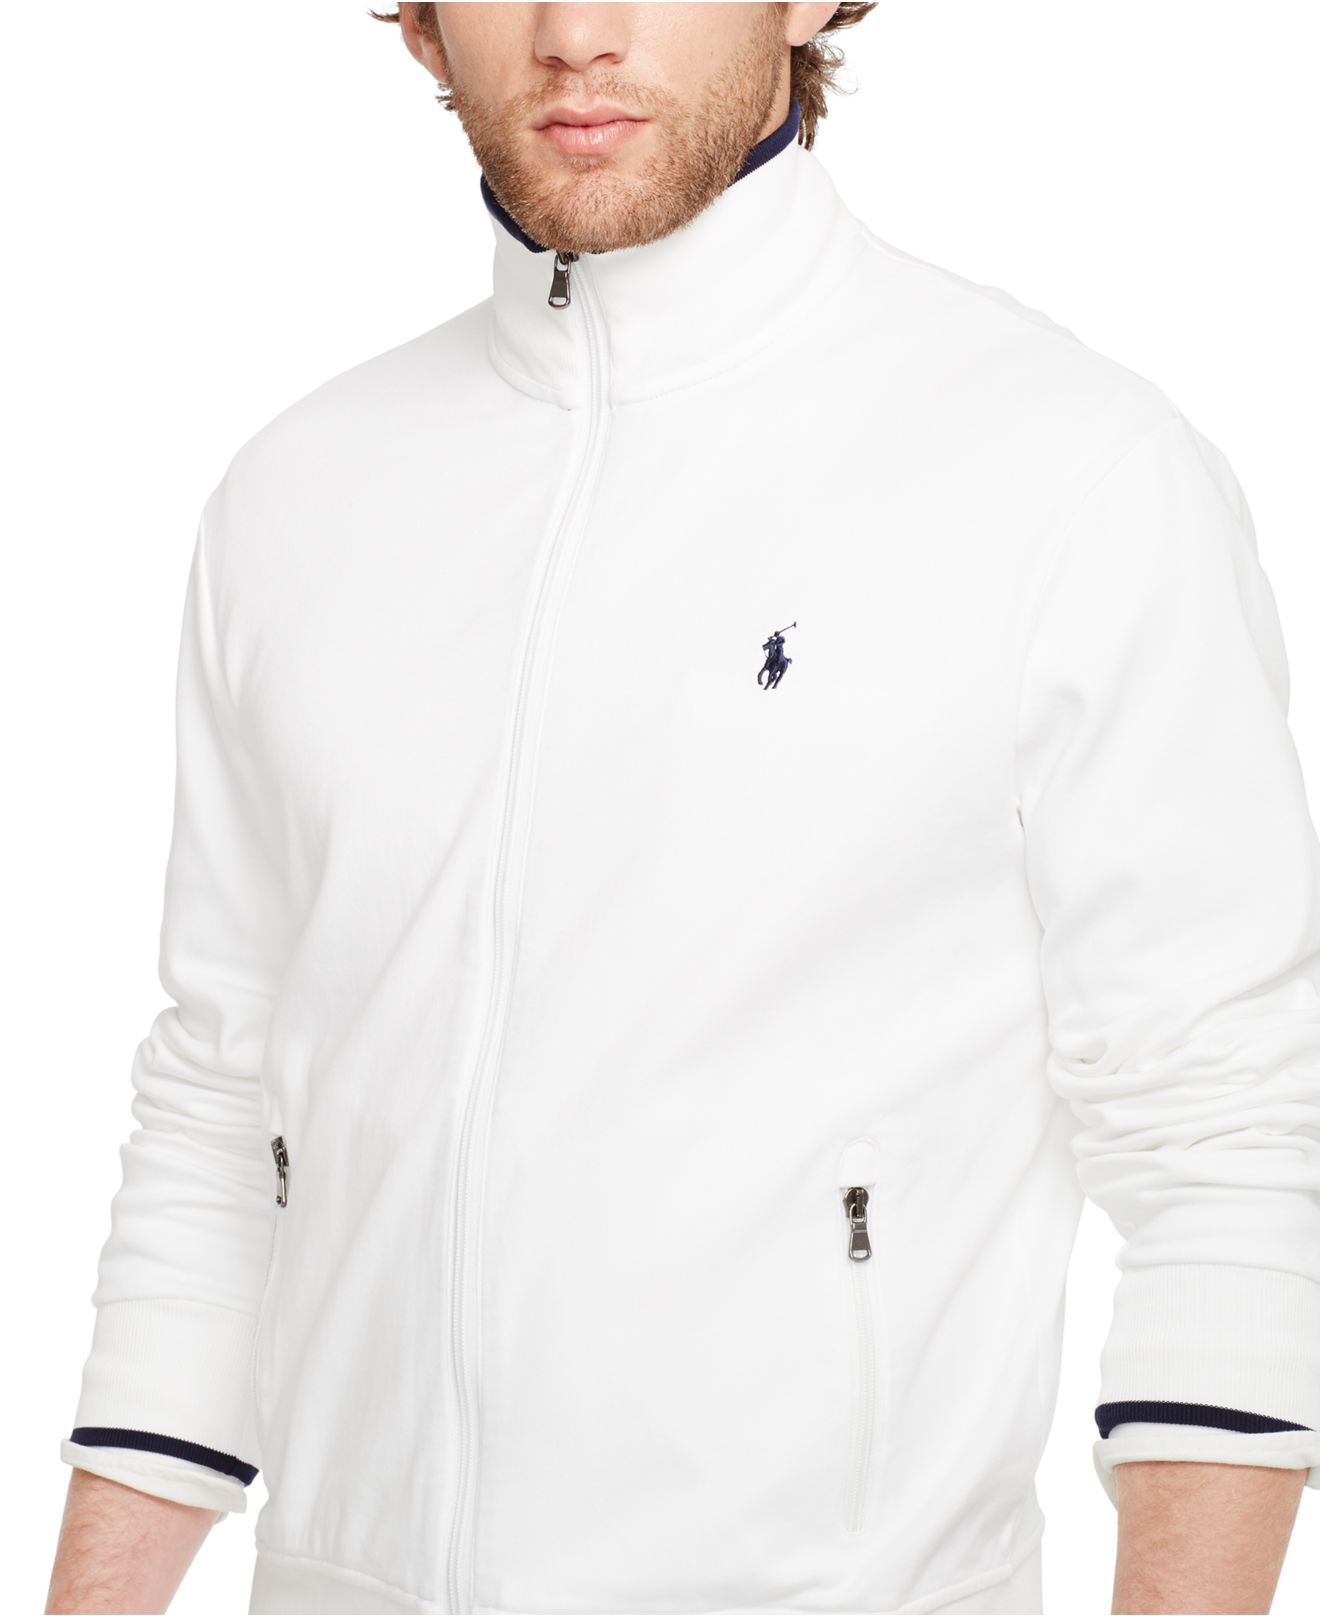 Polo Ralph Lauren Full-Zip Track Jacket in White for Men - Lyst